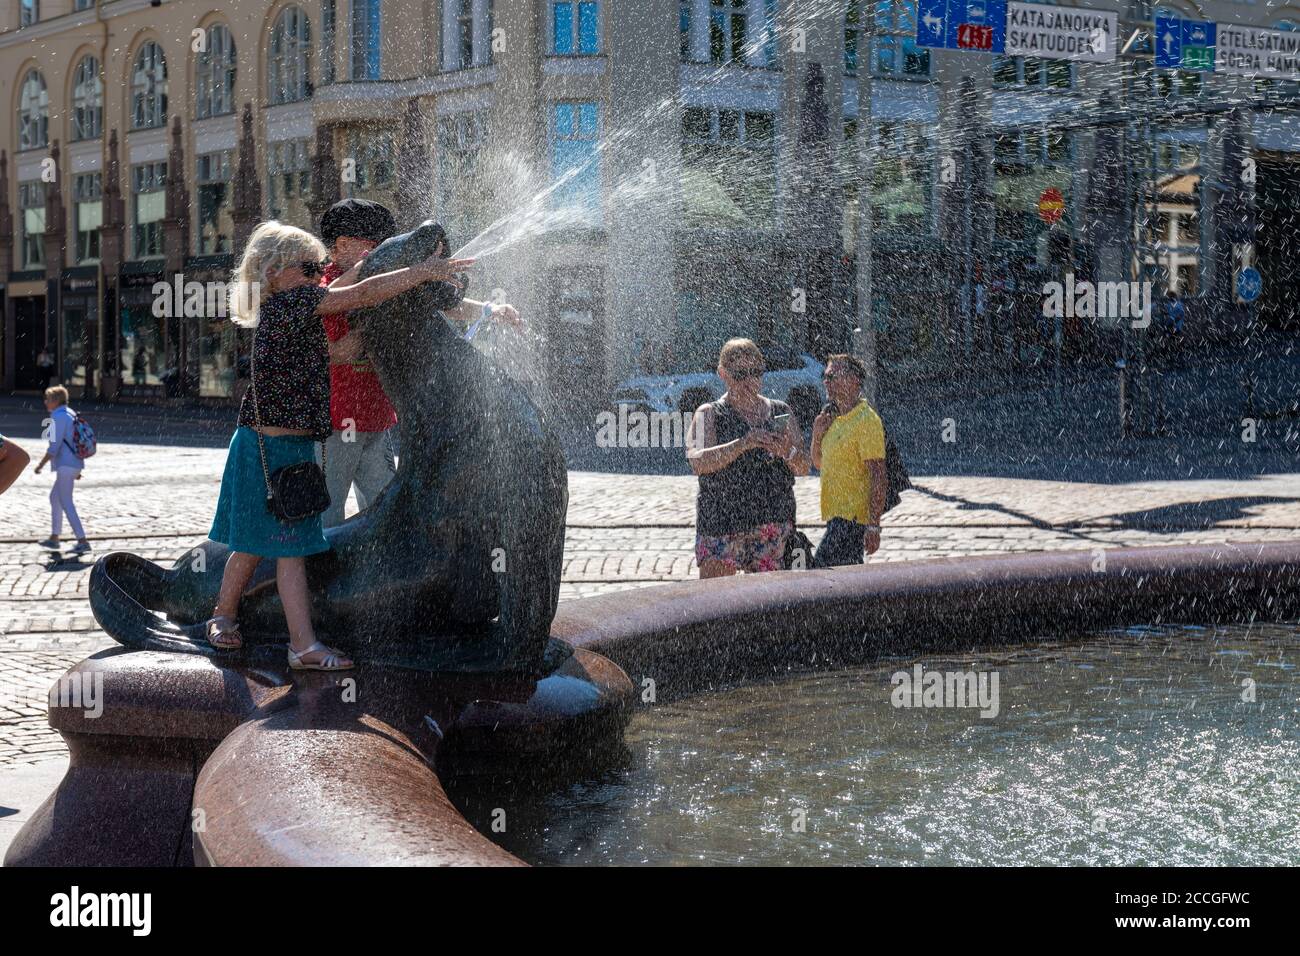 Jeune fille jouant avec le lion de mer de piquant d'eau, faisant partie de la sculpture de Havis Amanda ou statue de ville Vallgren, à Helsinki, en Finlande Banque D'Images